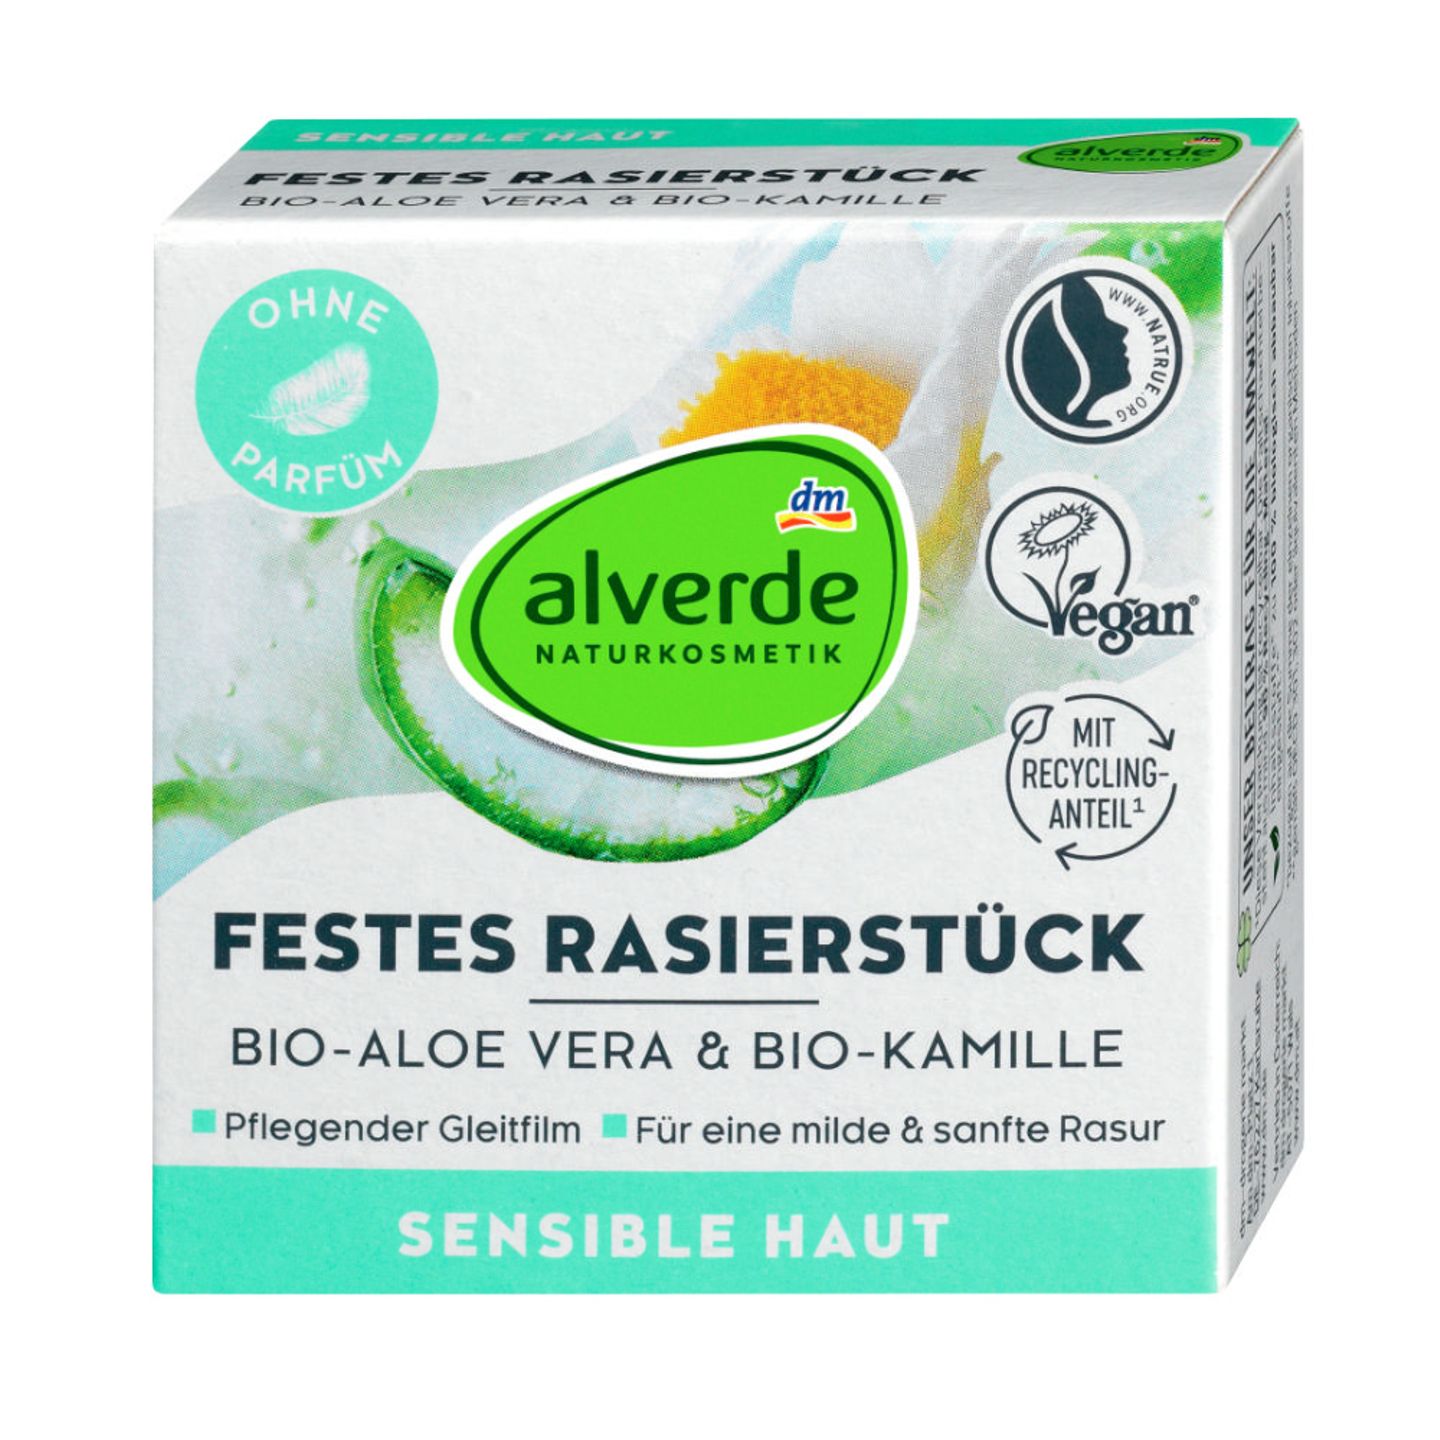 Sanfter Öko: "Festes Rasierstück Bio-Aloe vera und Bio-Kamille“ von Alverde, 50 g ca. 4 Euro.